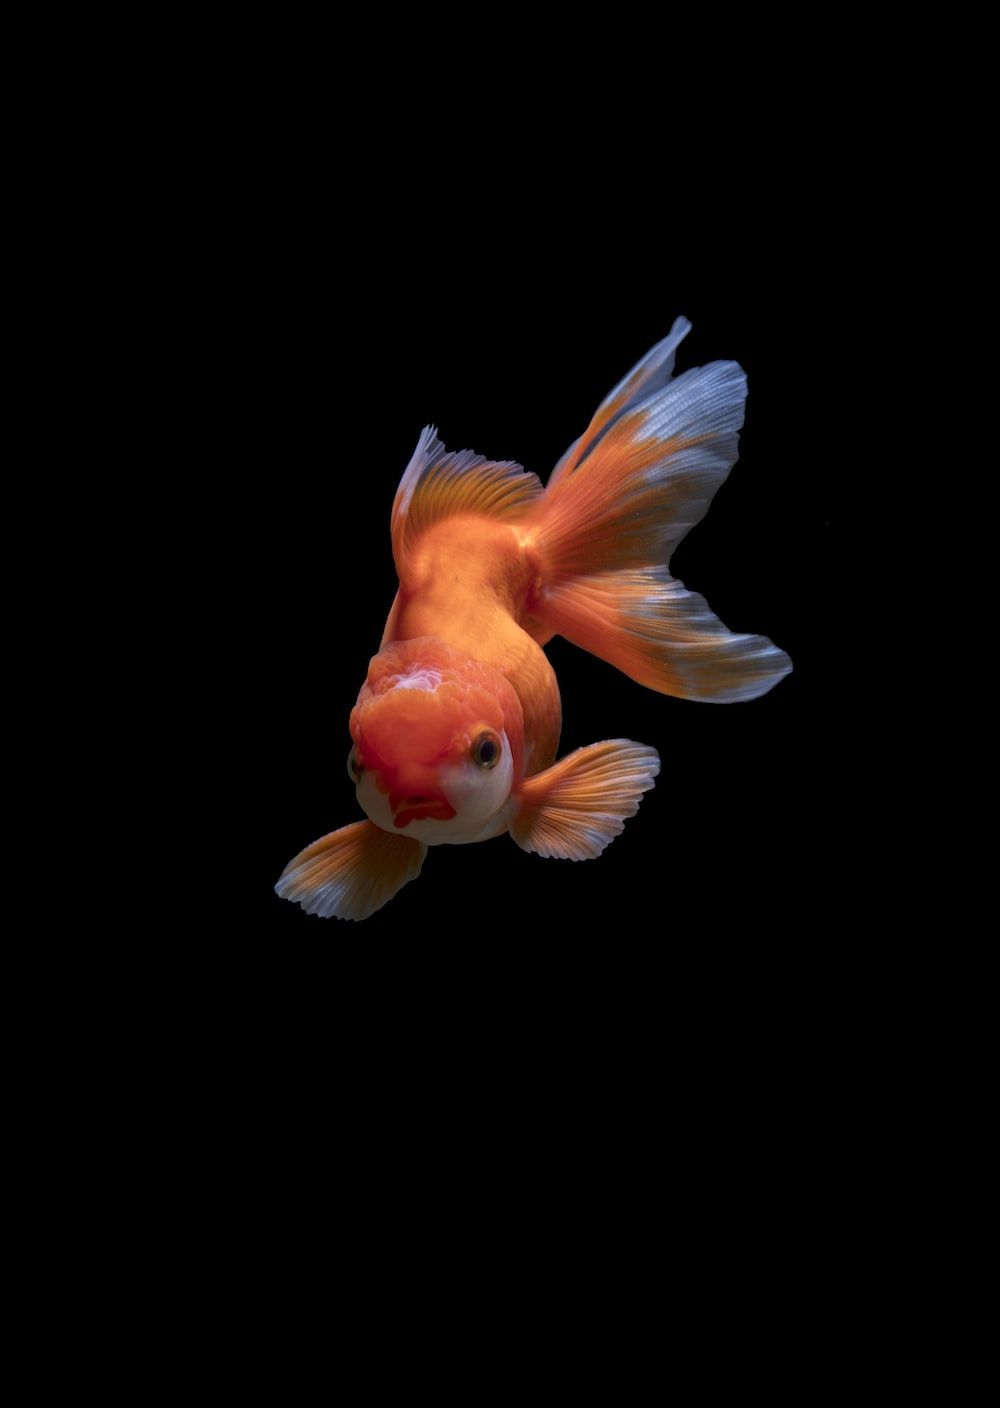 A goldfish swimming in the dark water - Koi fish, fish